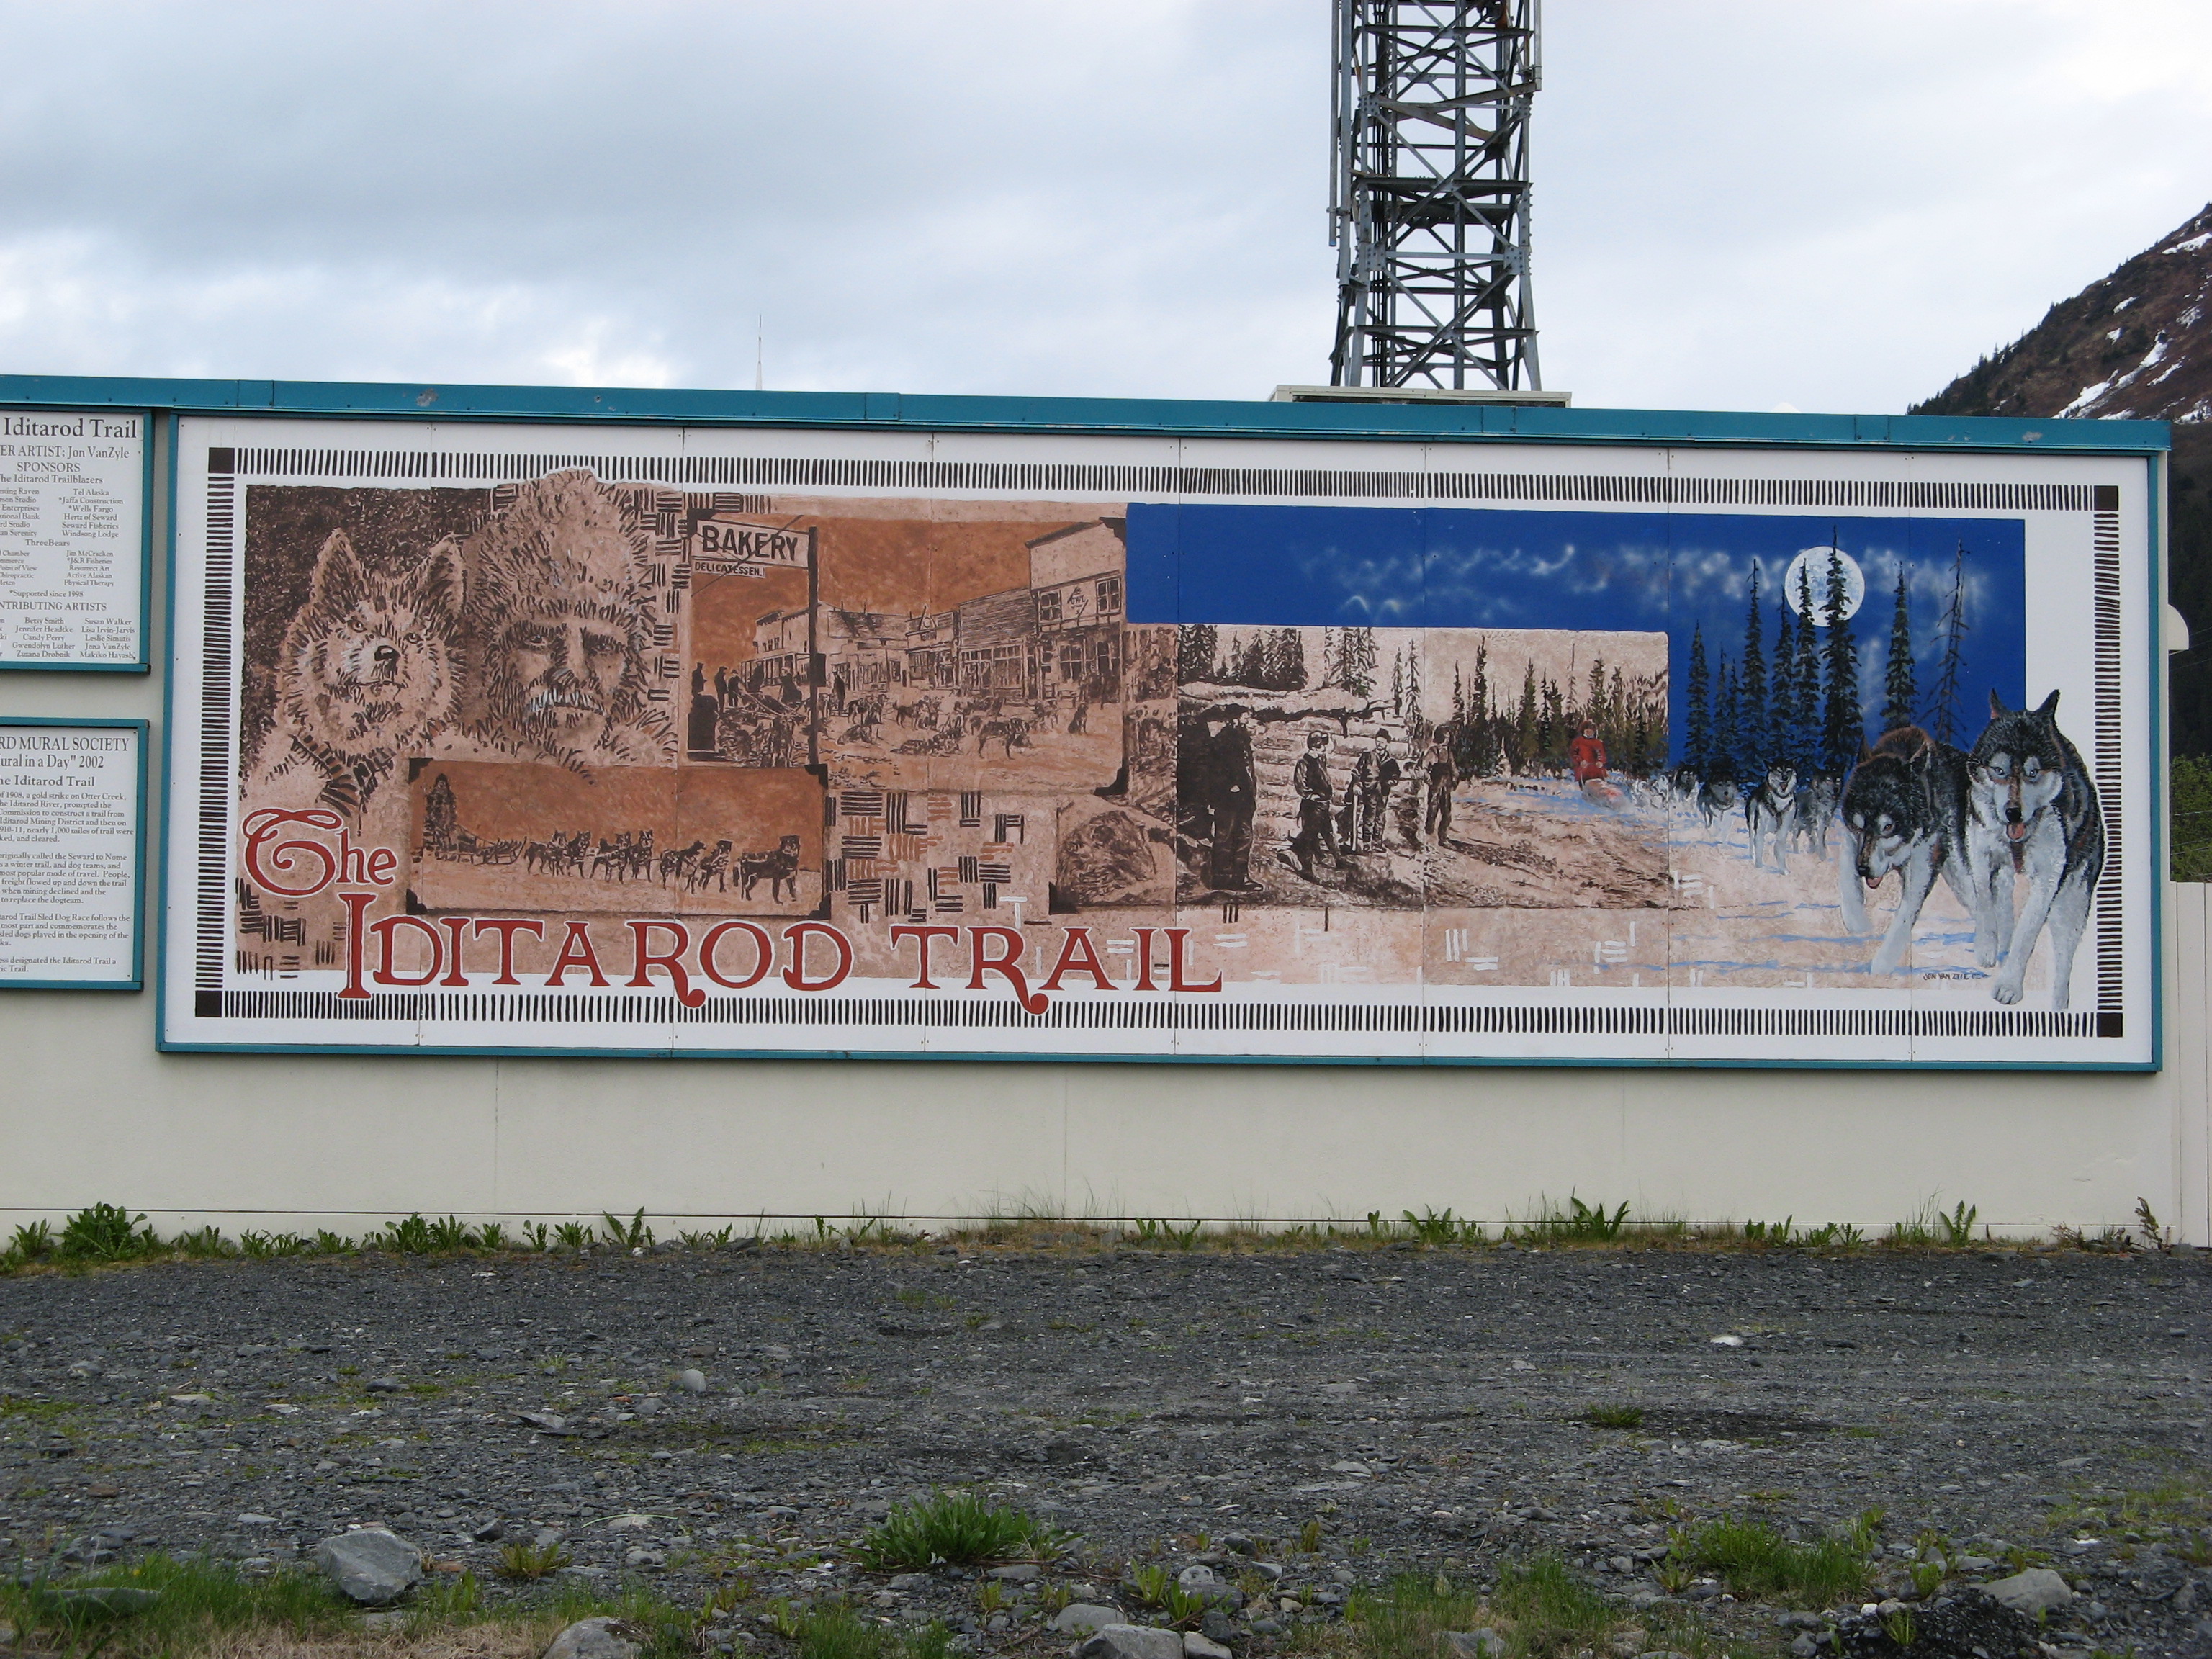 Iditarod mural in Seward, Alaska.